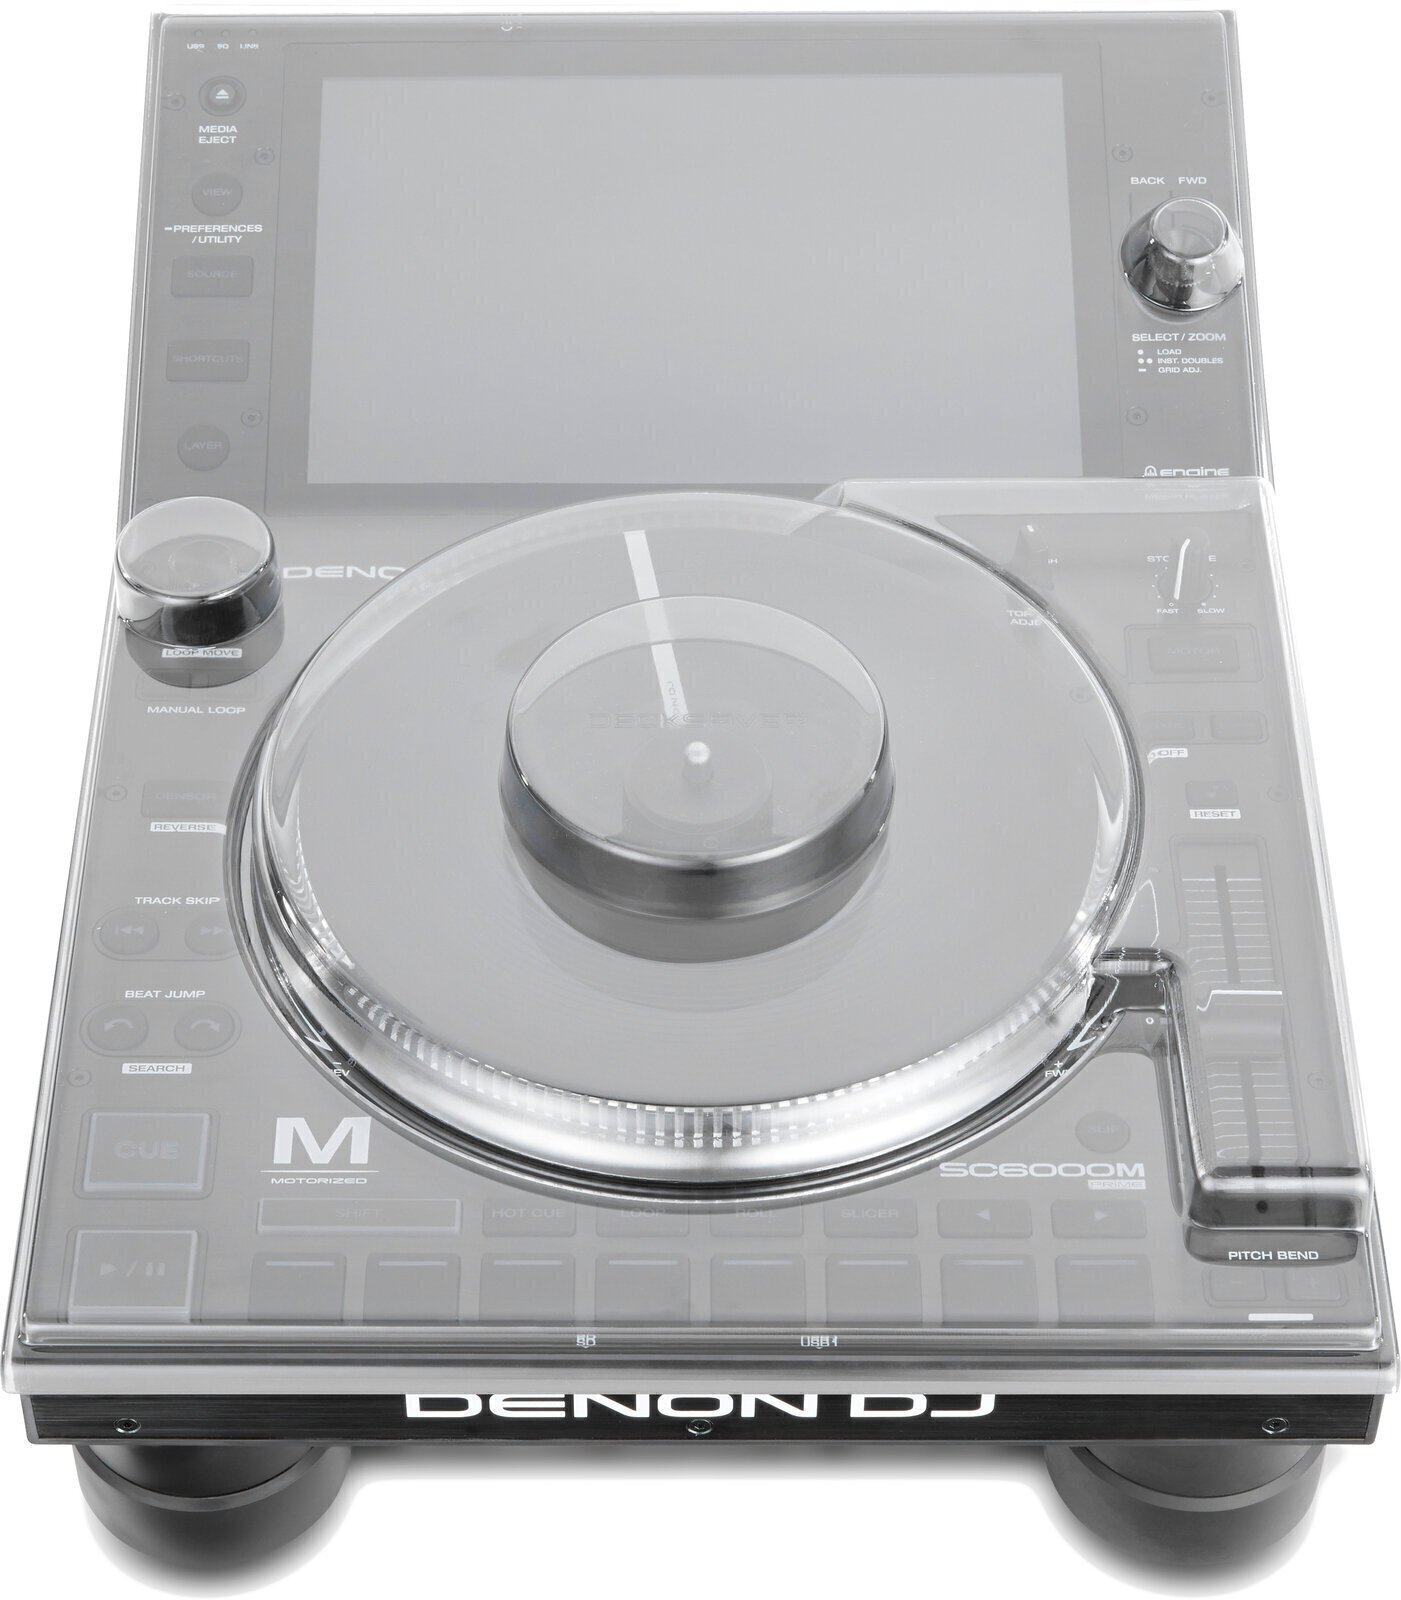 Stolní DJ přehrávač Denon SC6000M Prime Cover SET